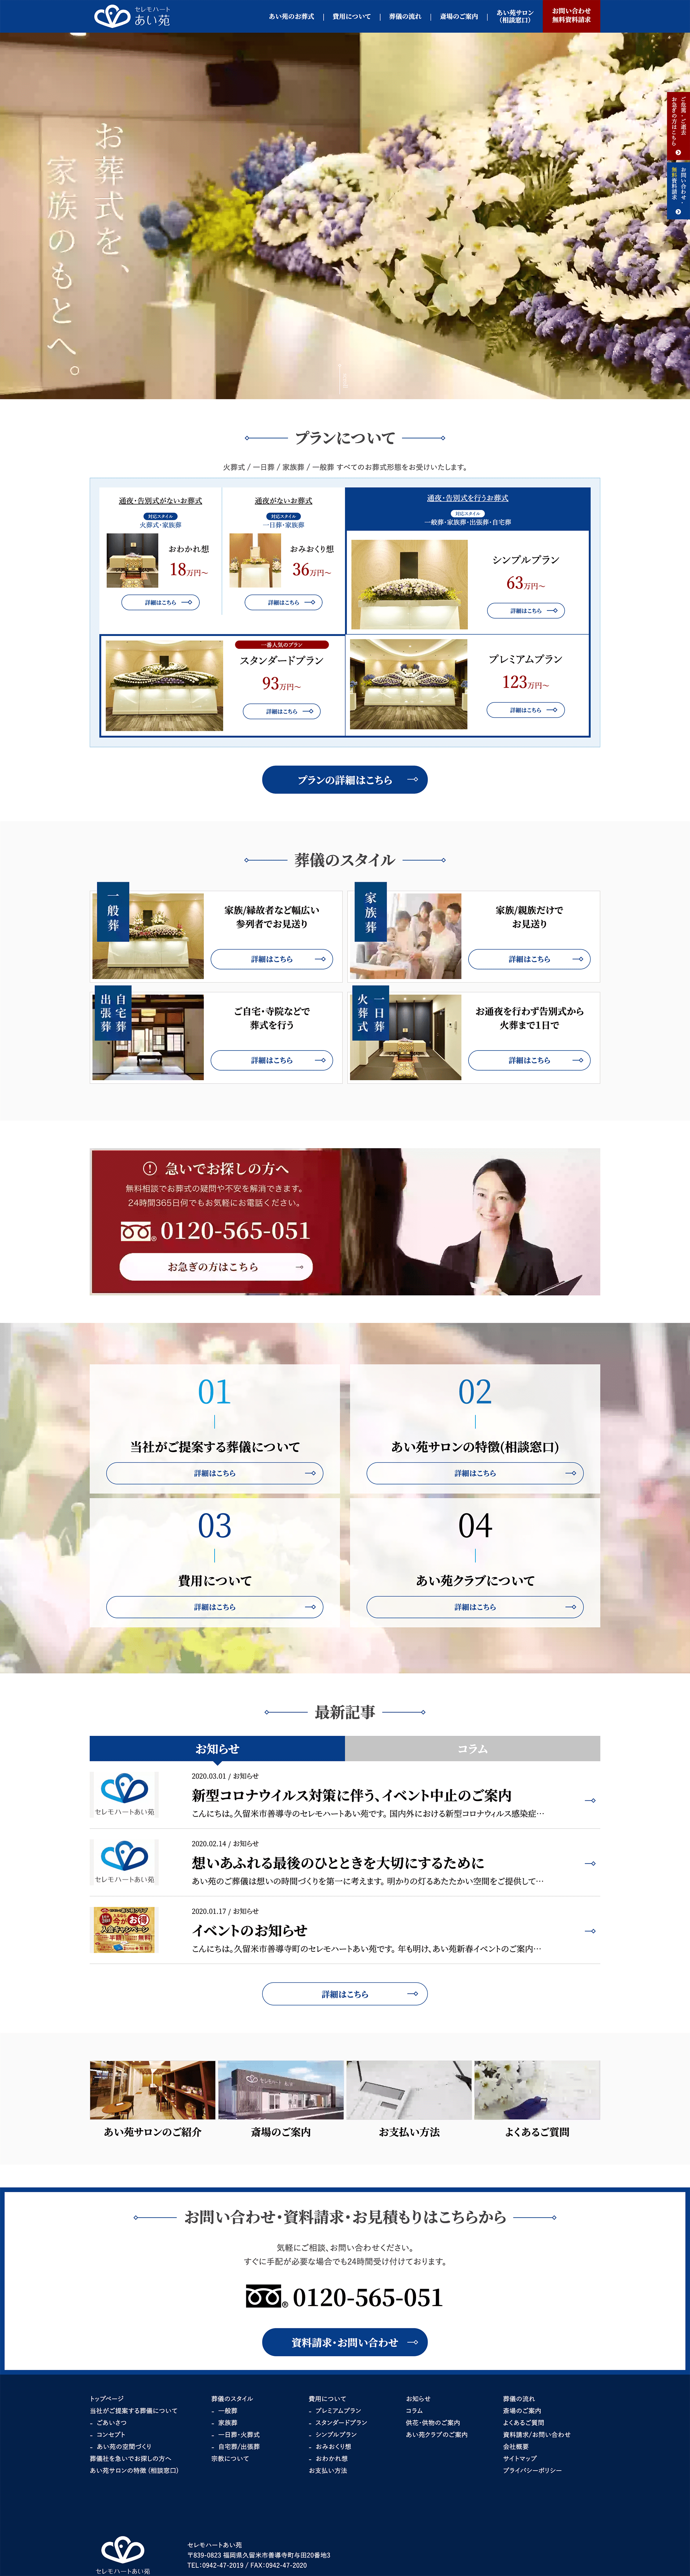 株式会社藍苑様 ホームページ PC画像